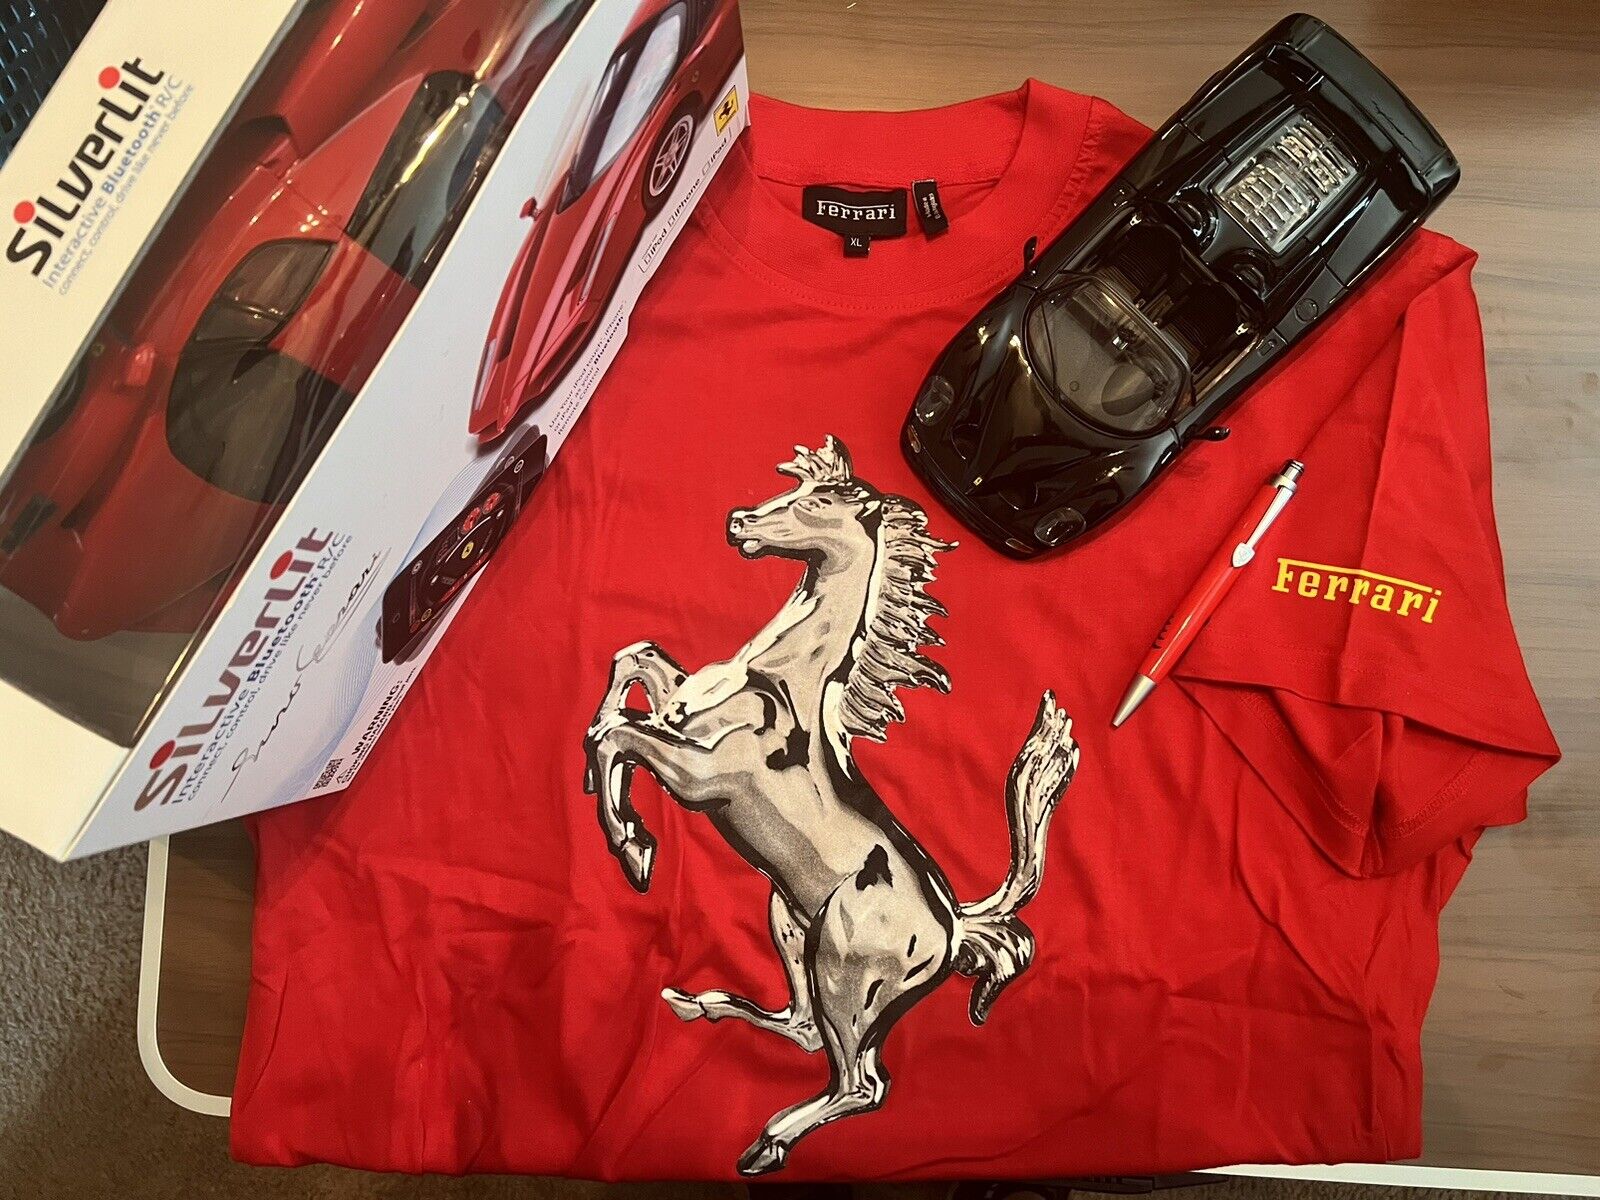 Ferrari Ultimate Collection‼️ Please see descriptions.